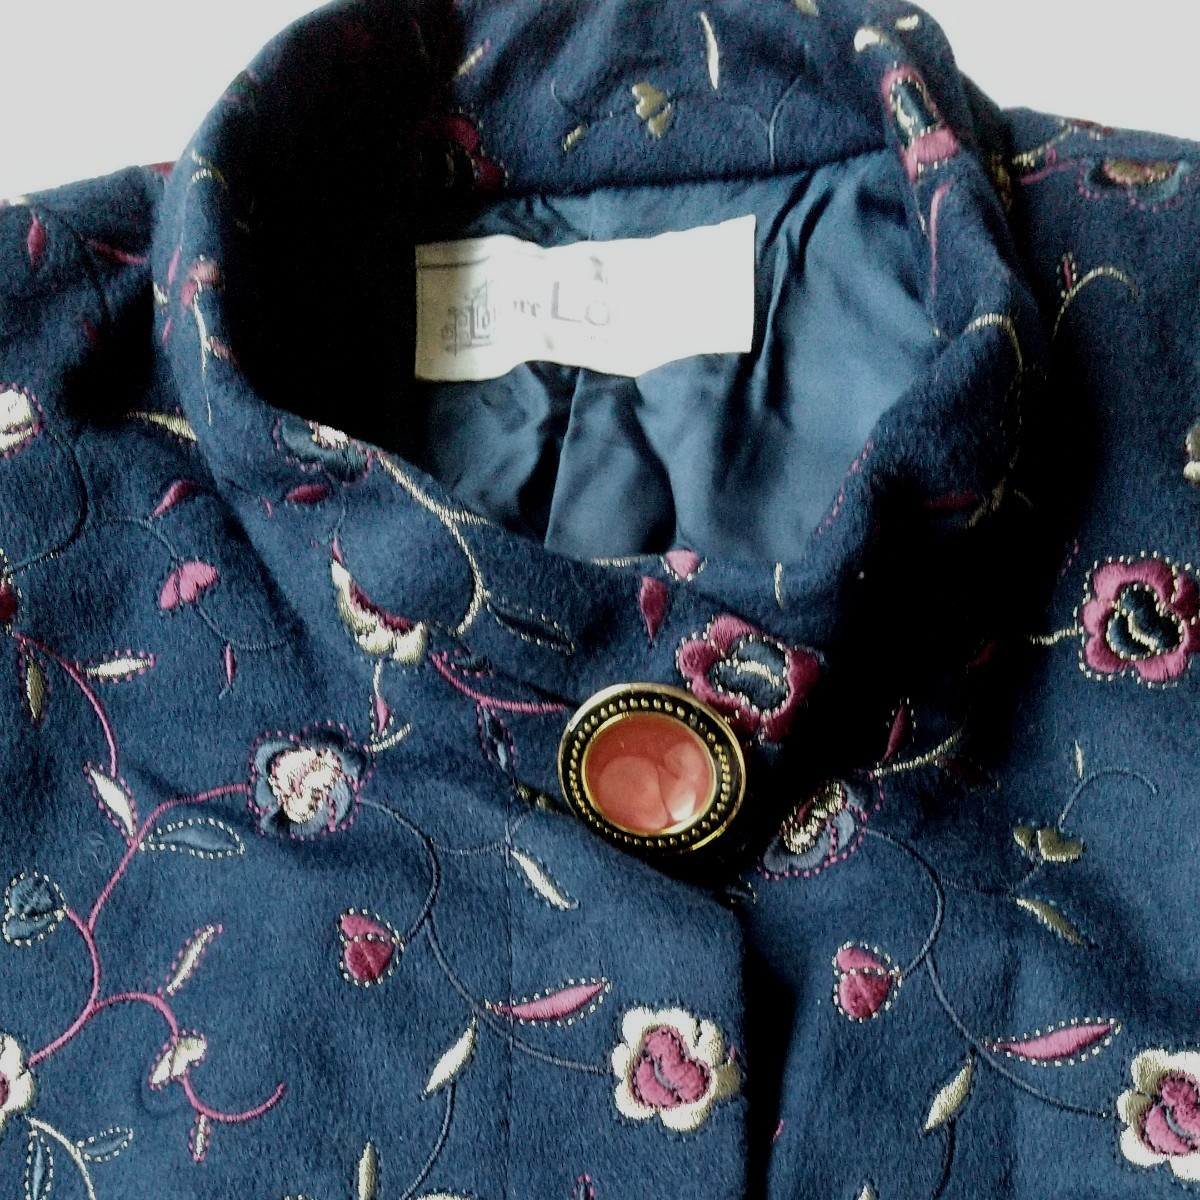 カシミア混ウールのフランス製生地 ロングコート ネイビー生地に刺繍